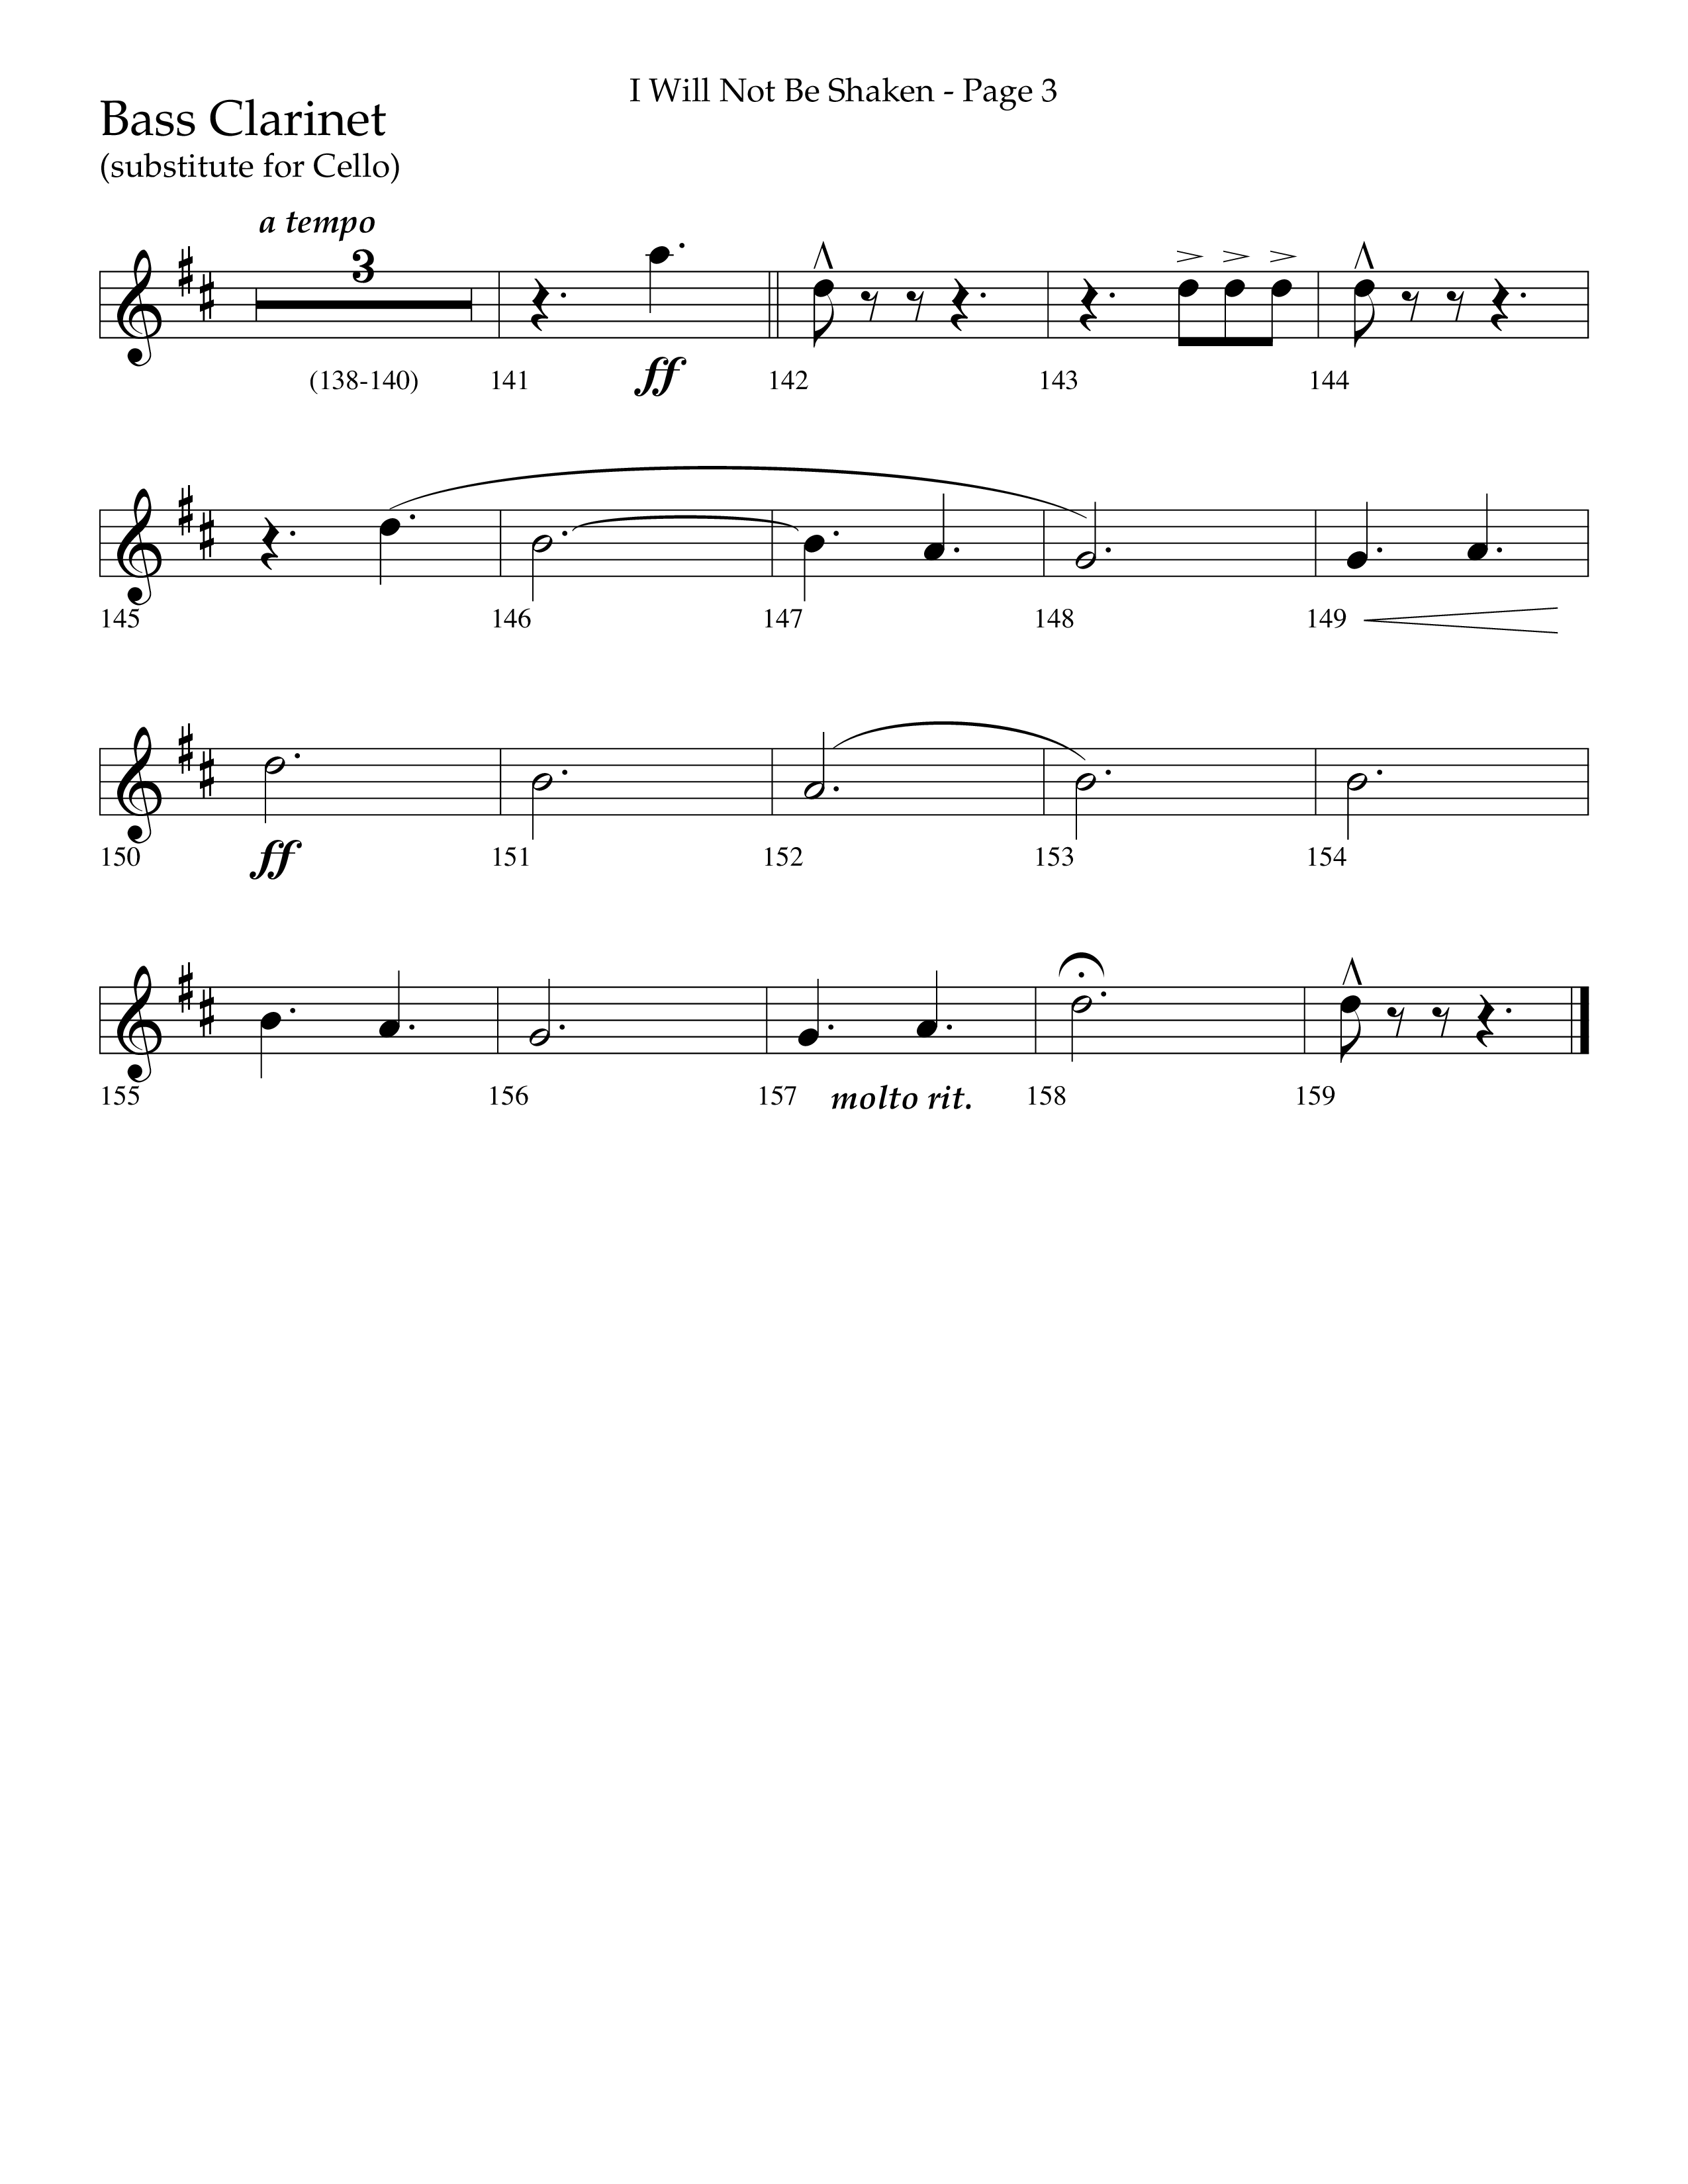 I Will Not Be Shaken (Choral Anthem SATB) Bass Clarinet (Lifeway Choral / Arr. Cliff Duren)